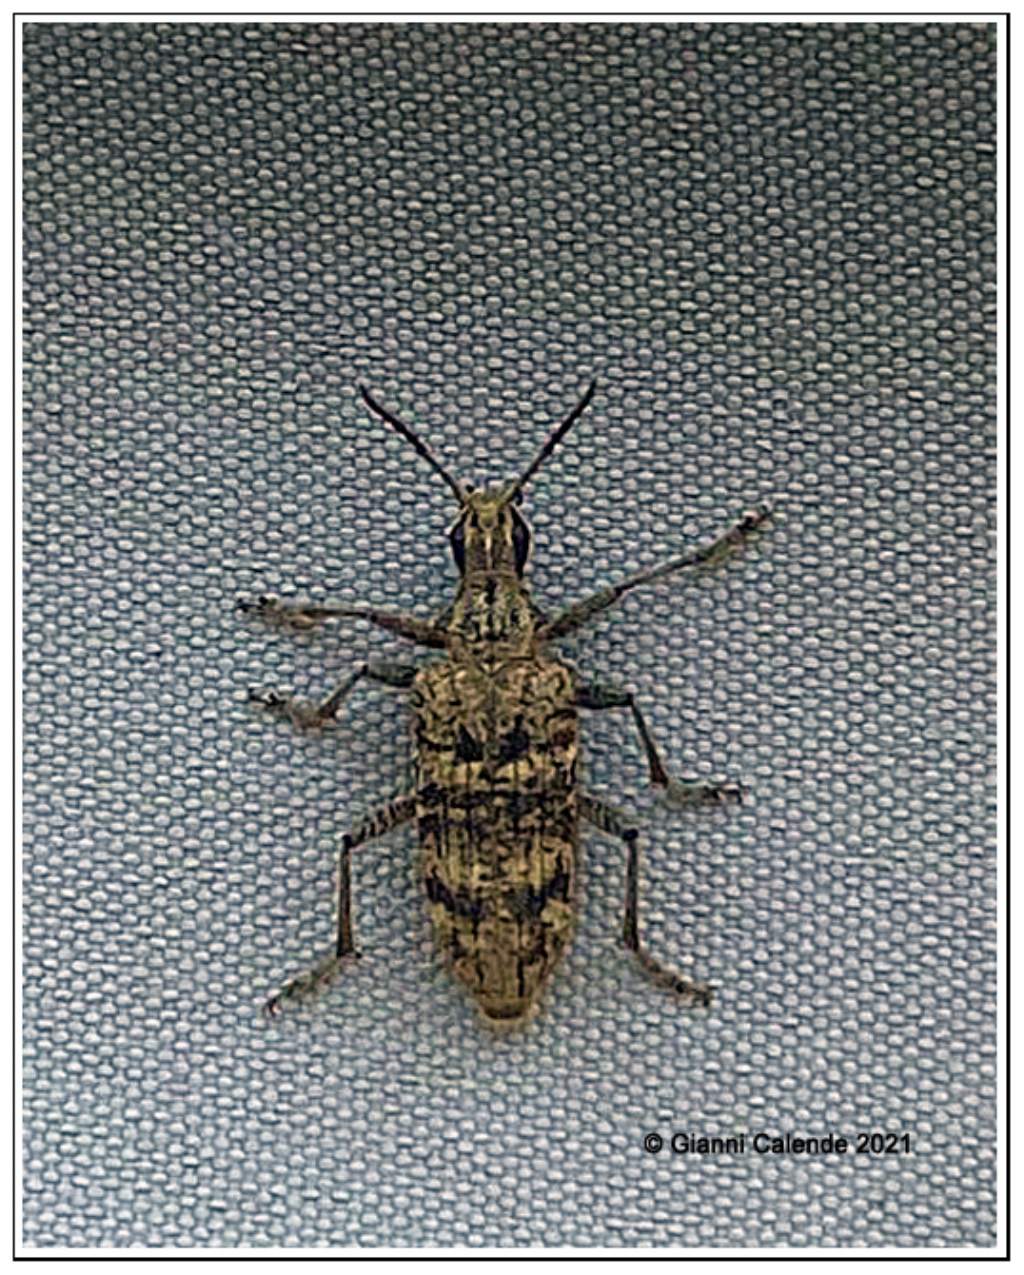 Cerambycidae: Rhagium inquisitor, femmina